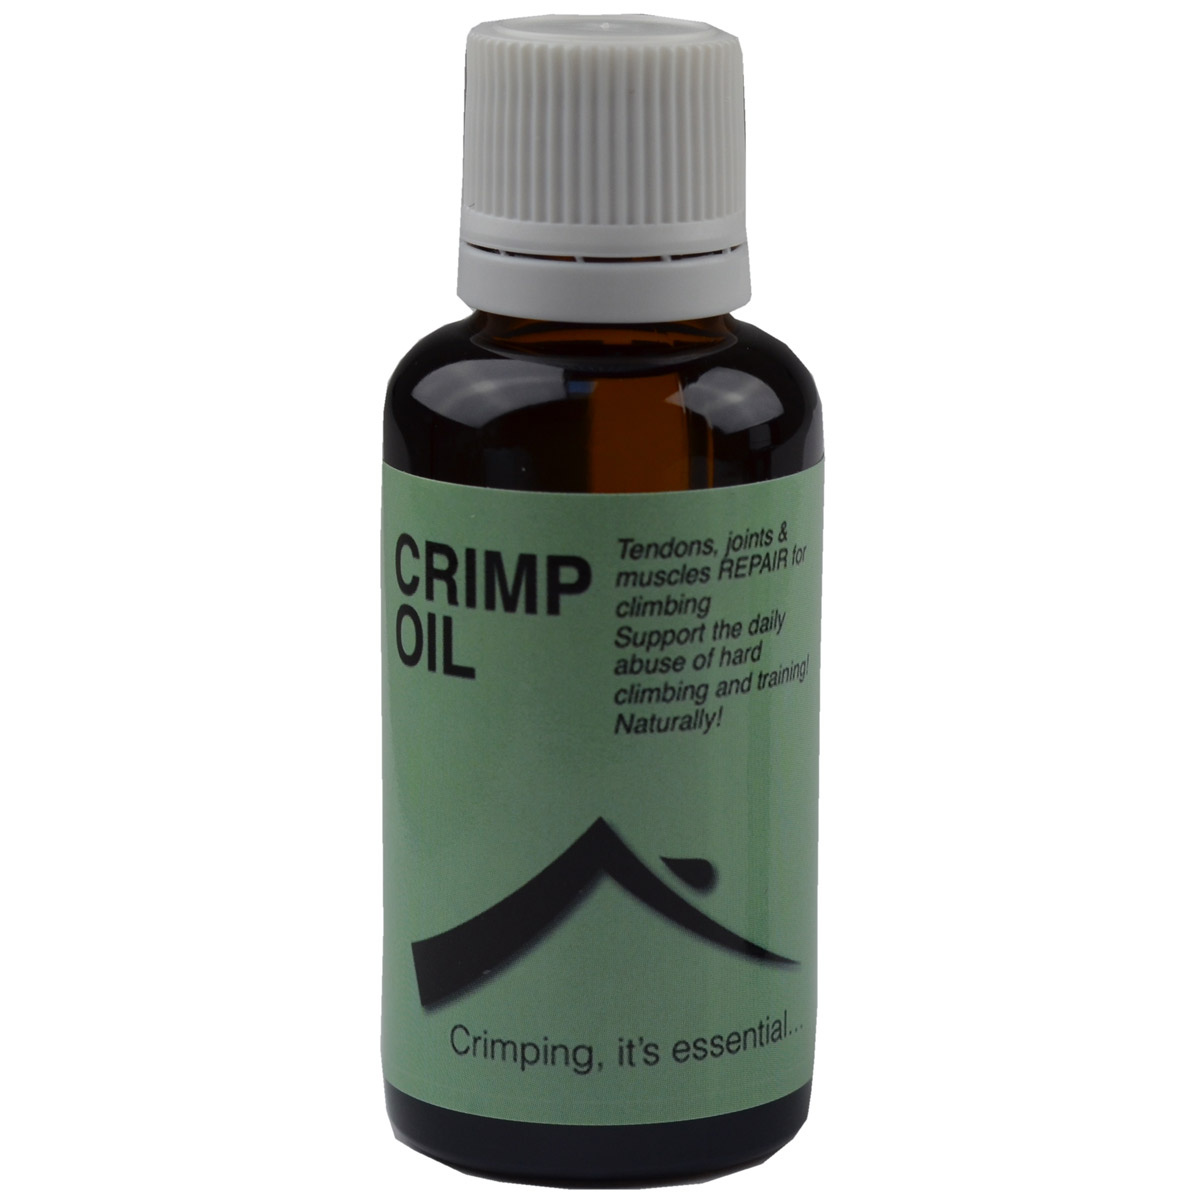 Image of Crimp Oil Crimp Oil Original